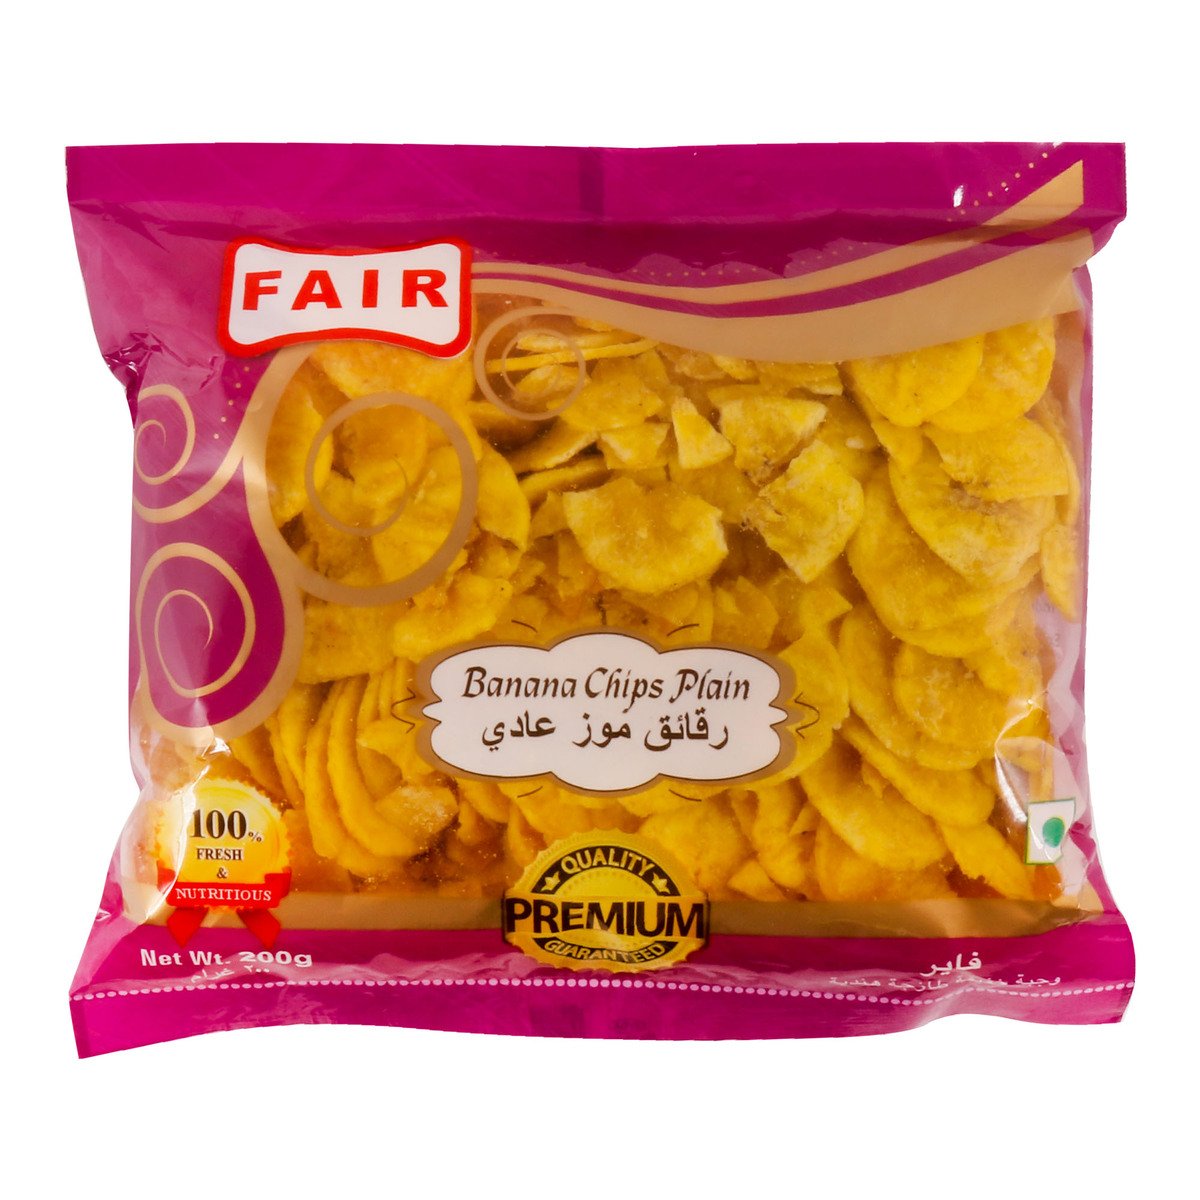 Fair Banana Chips Plain Premium 200 g